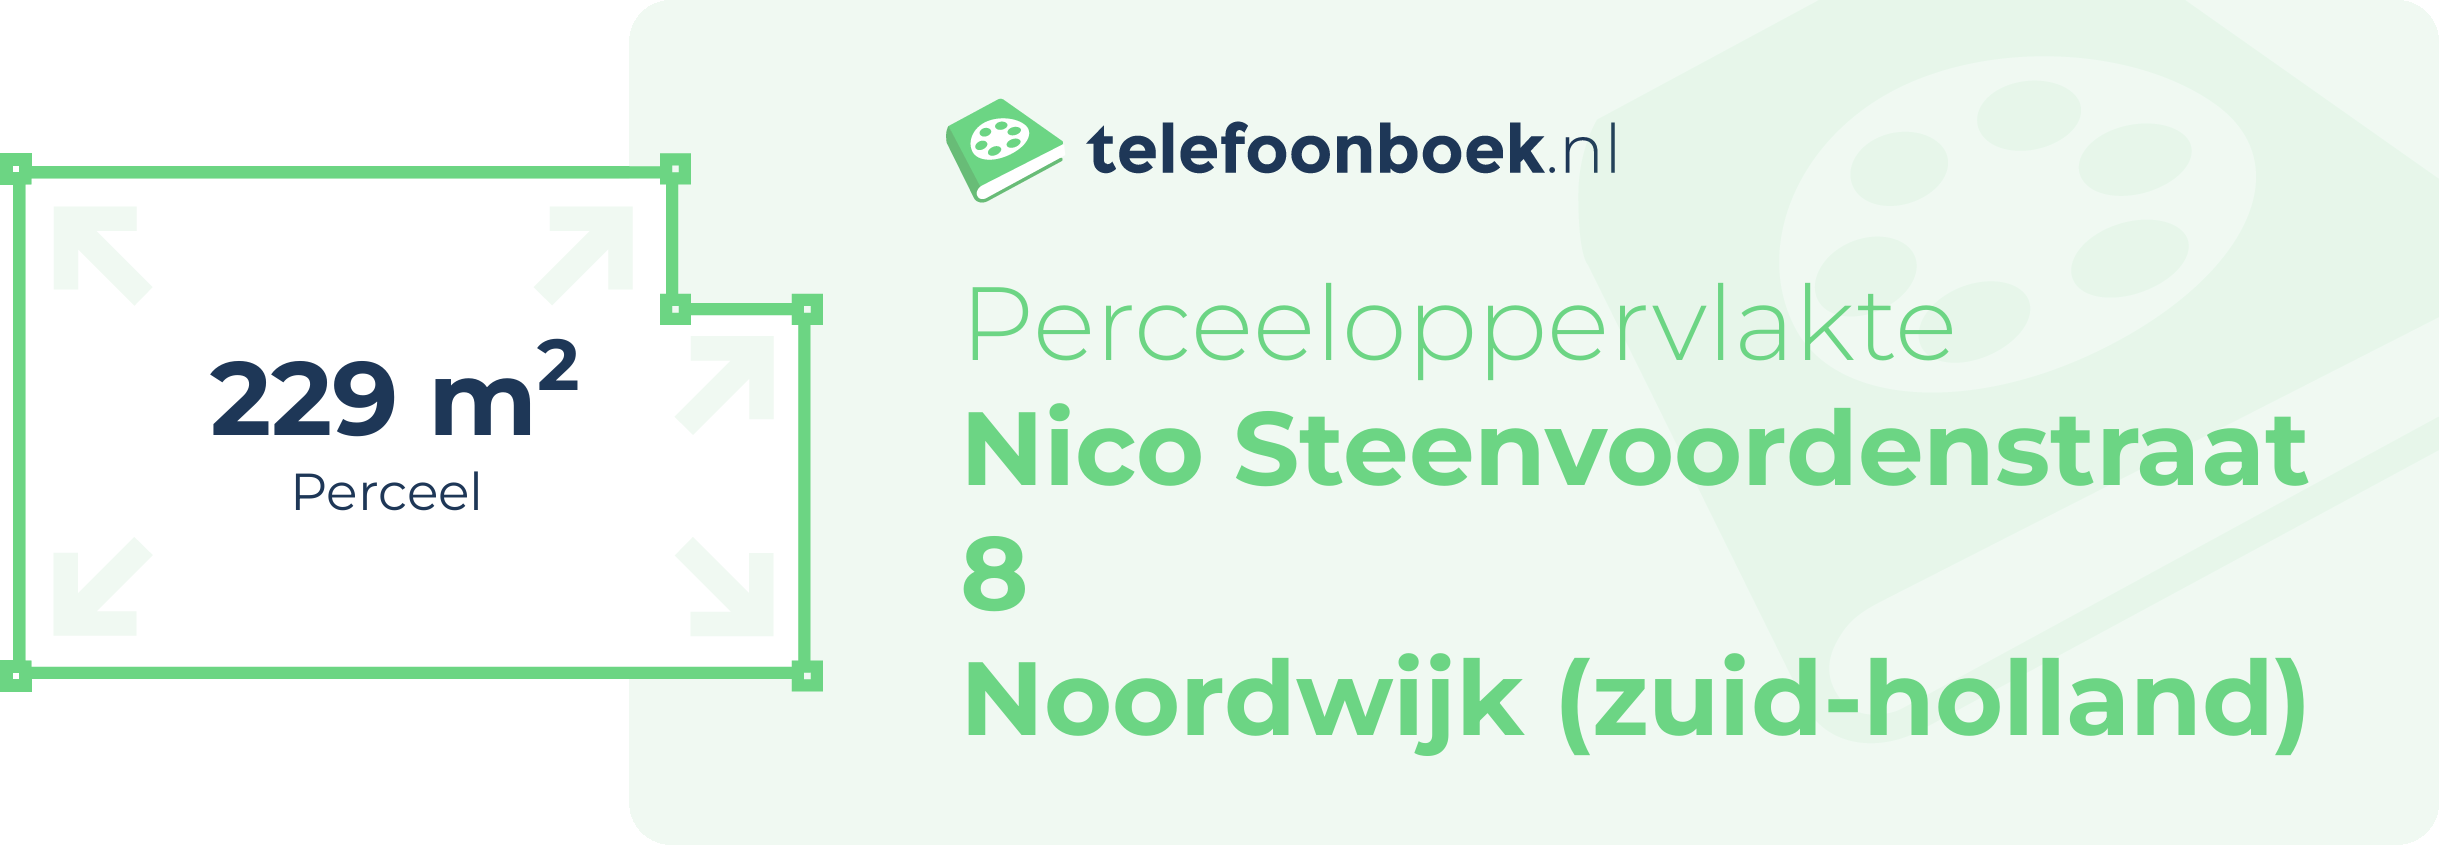 Perceeloppervlakte Nico Steenvoordenstraat 8 Noordwijk (Zuid-Holland)